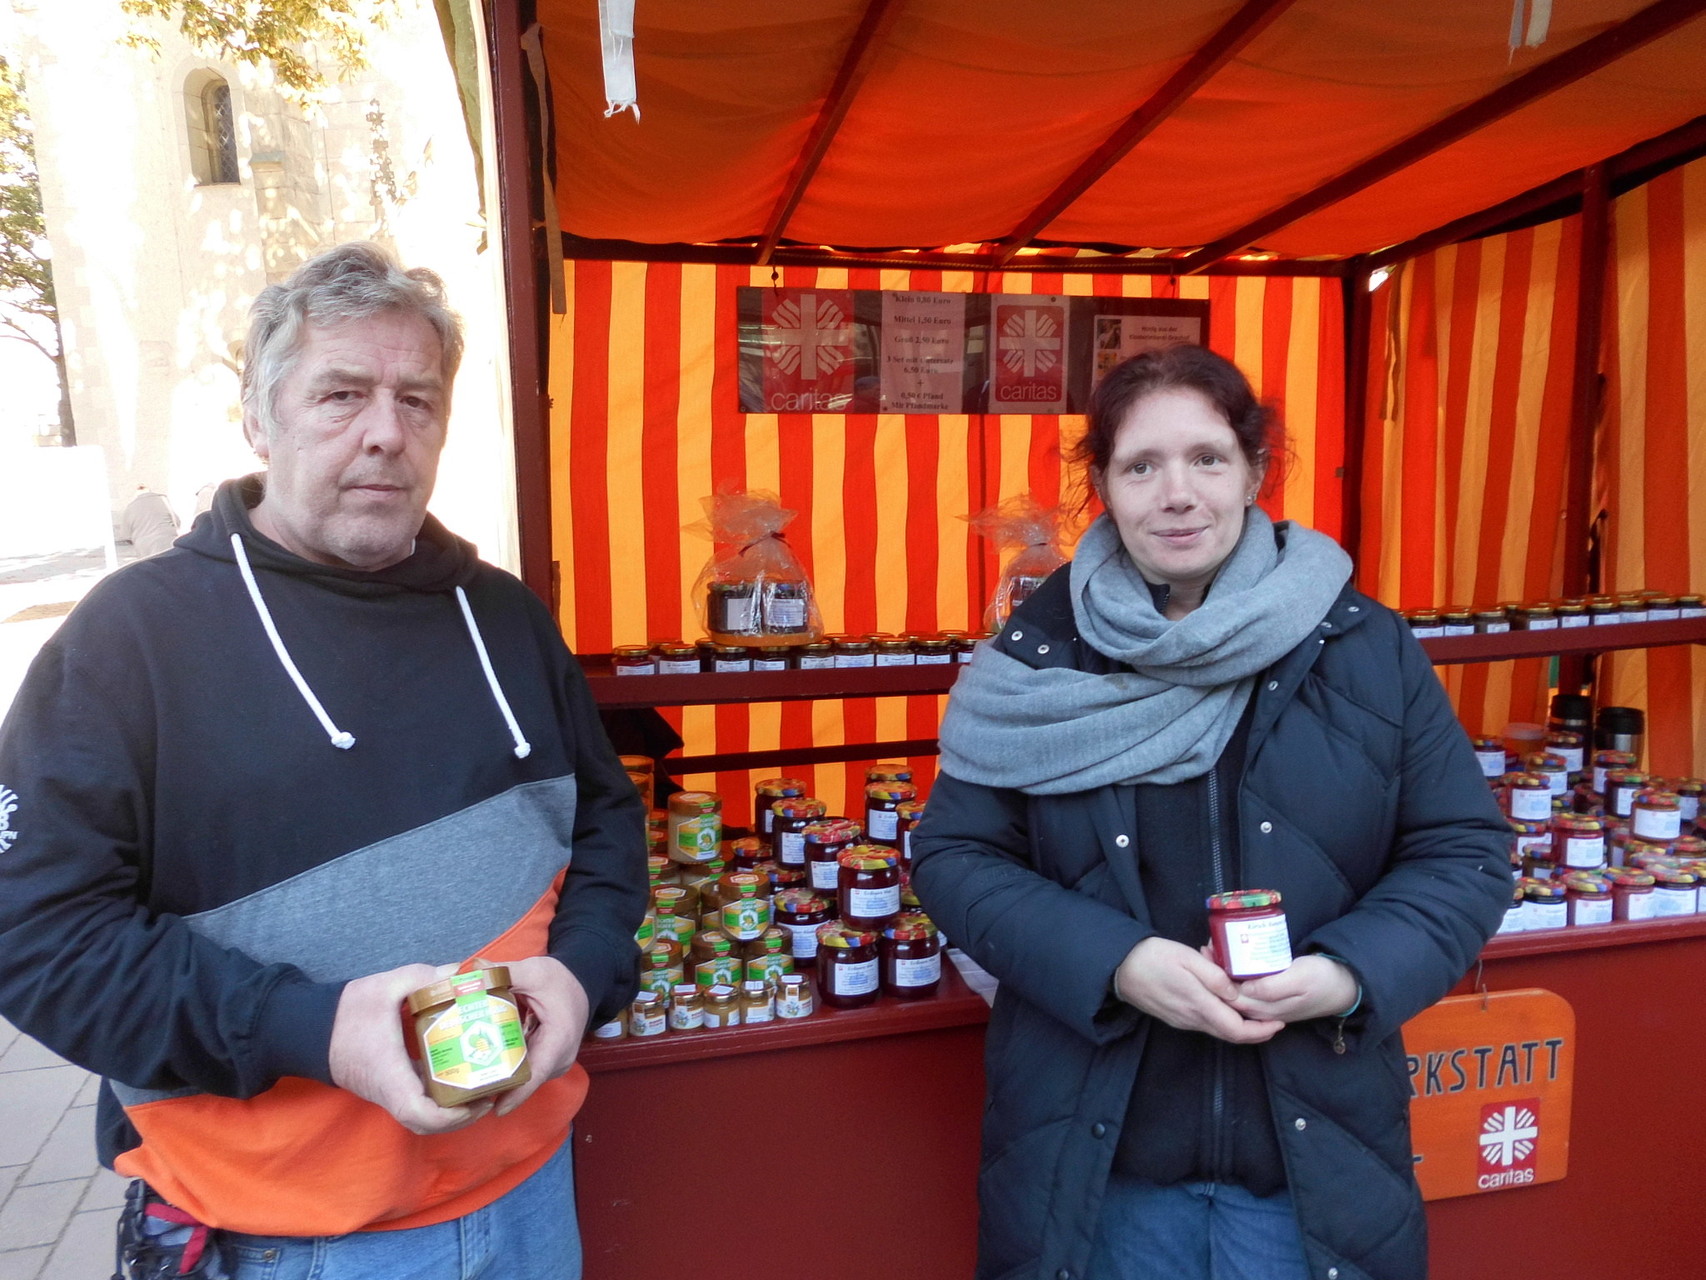 Wolfgang und Daniela betreuen den Verkaufsstand der Caritas Goslar